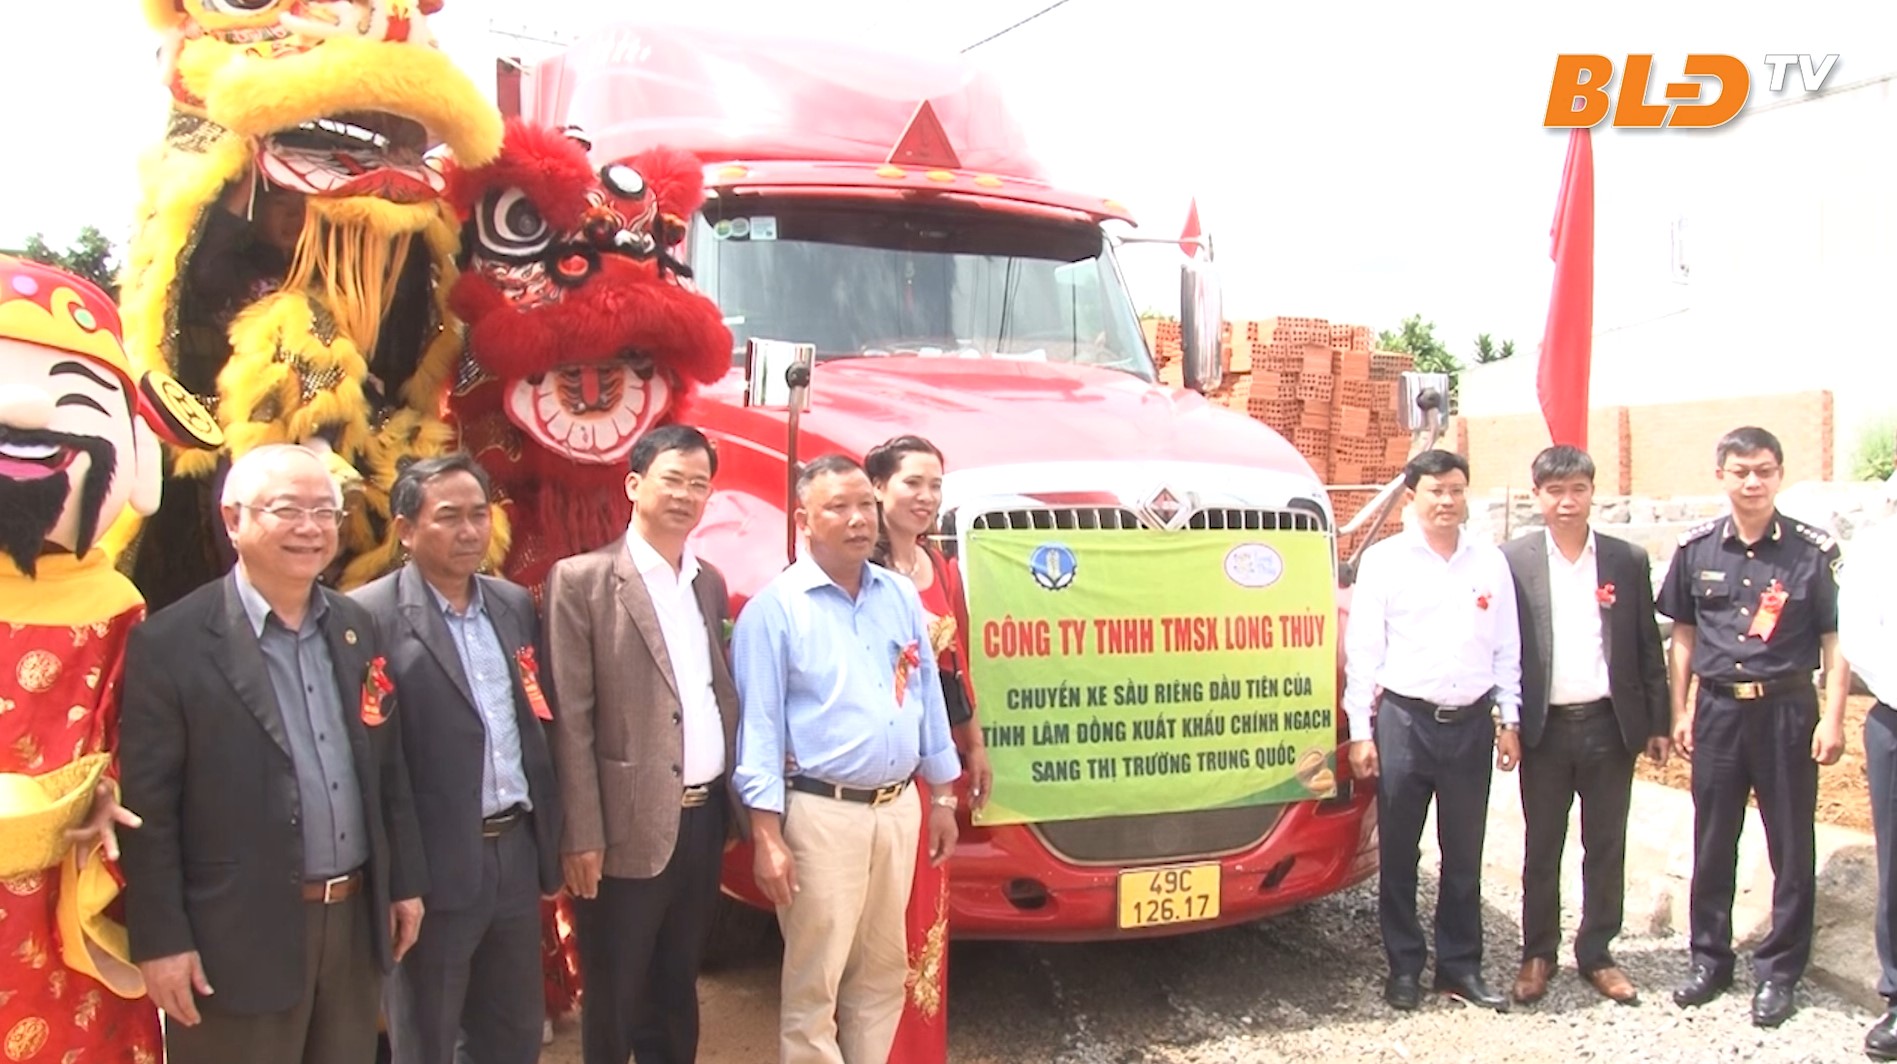 Lâm Đồng xuất khẩu lô sầu riêng chính ngạch đầu tiên sang Trung Quốc